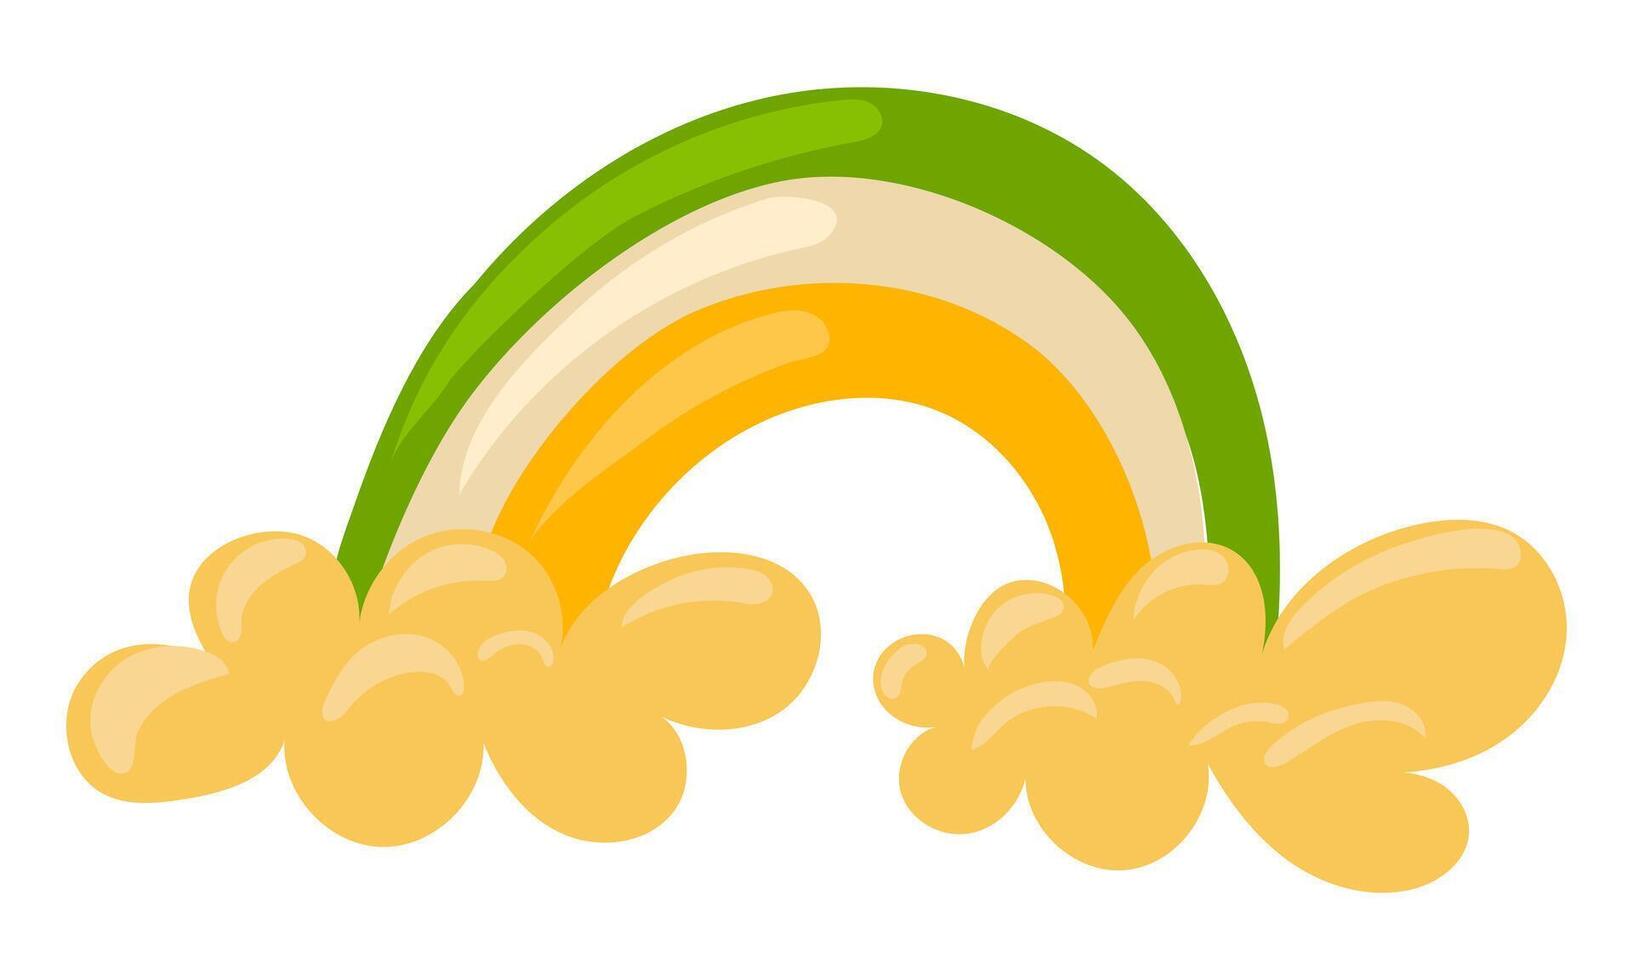 en vår regnbåge i de moln i de färger av irland. vektor regnbåge för st. Patricks dag. detta regnbåge är representerade i de färger av st. Patricks dag - orange, vit och grön. ljus färger